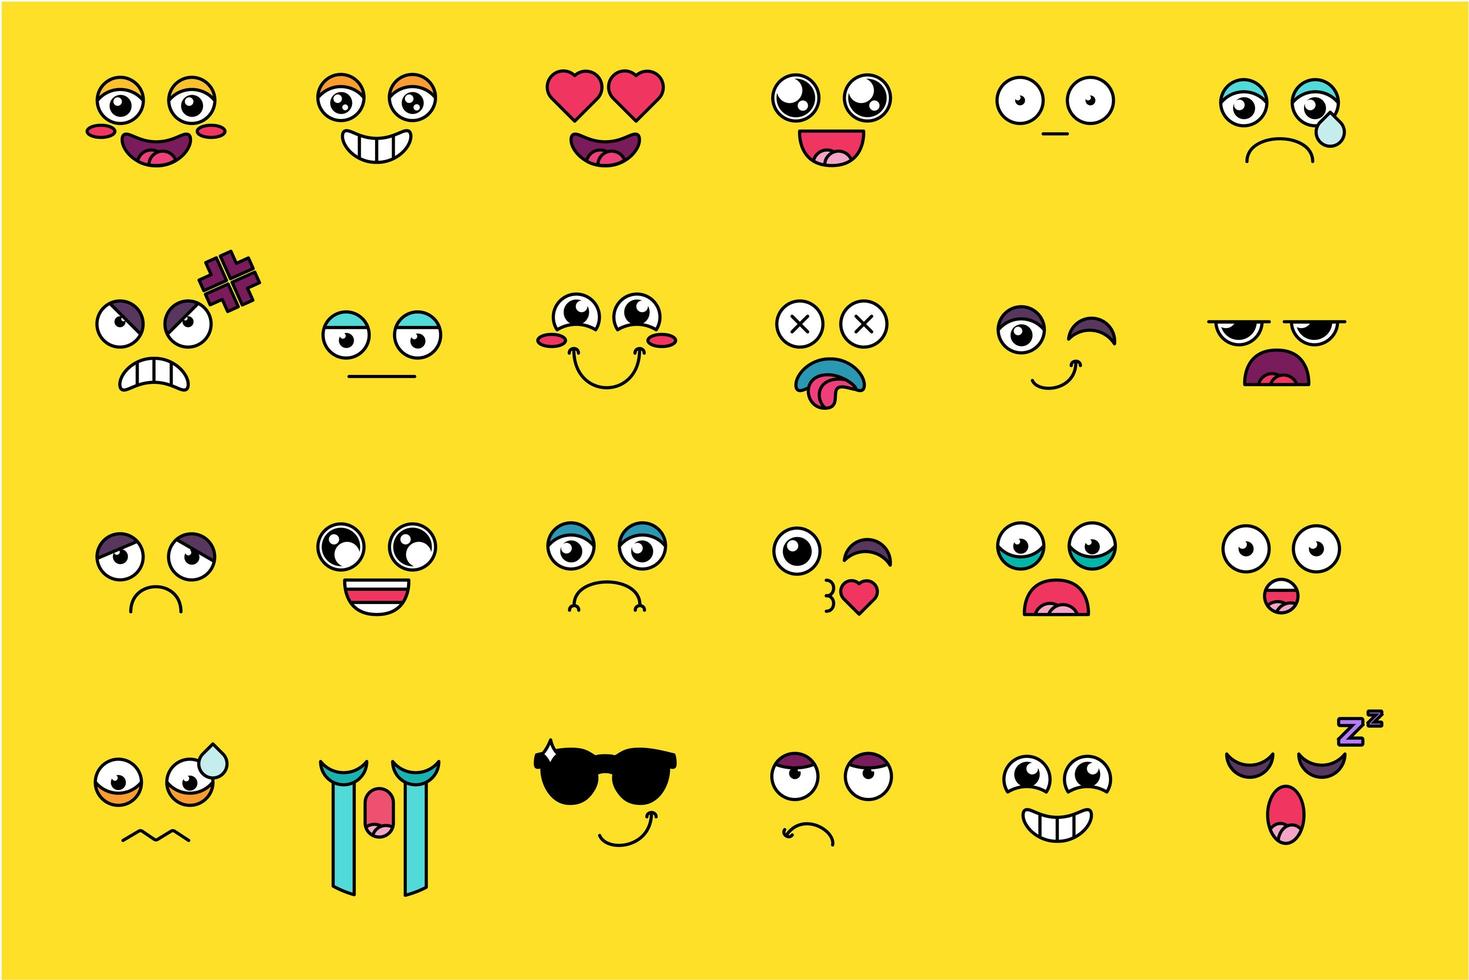 divertido y lindo juego de pegatinas emoji vector